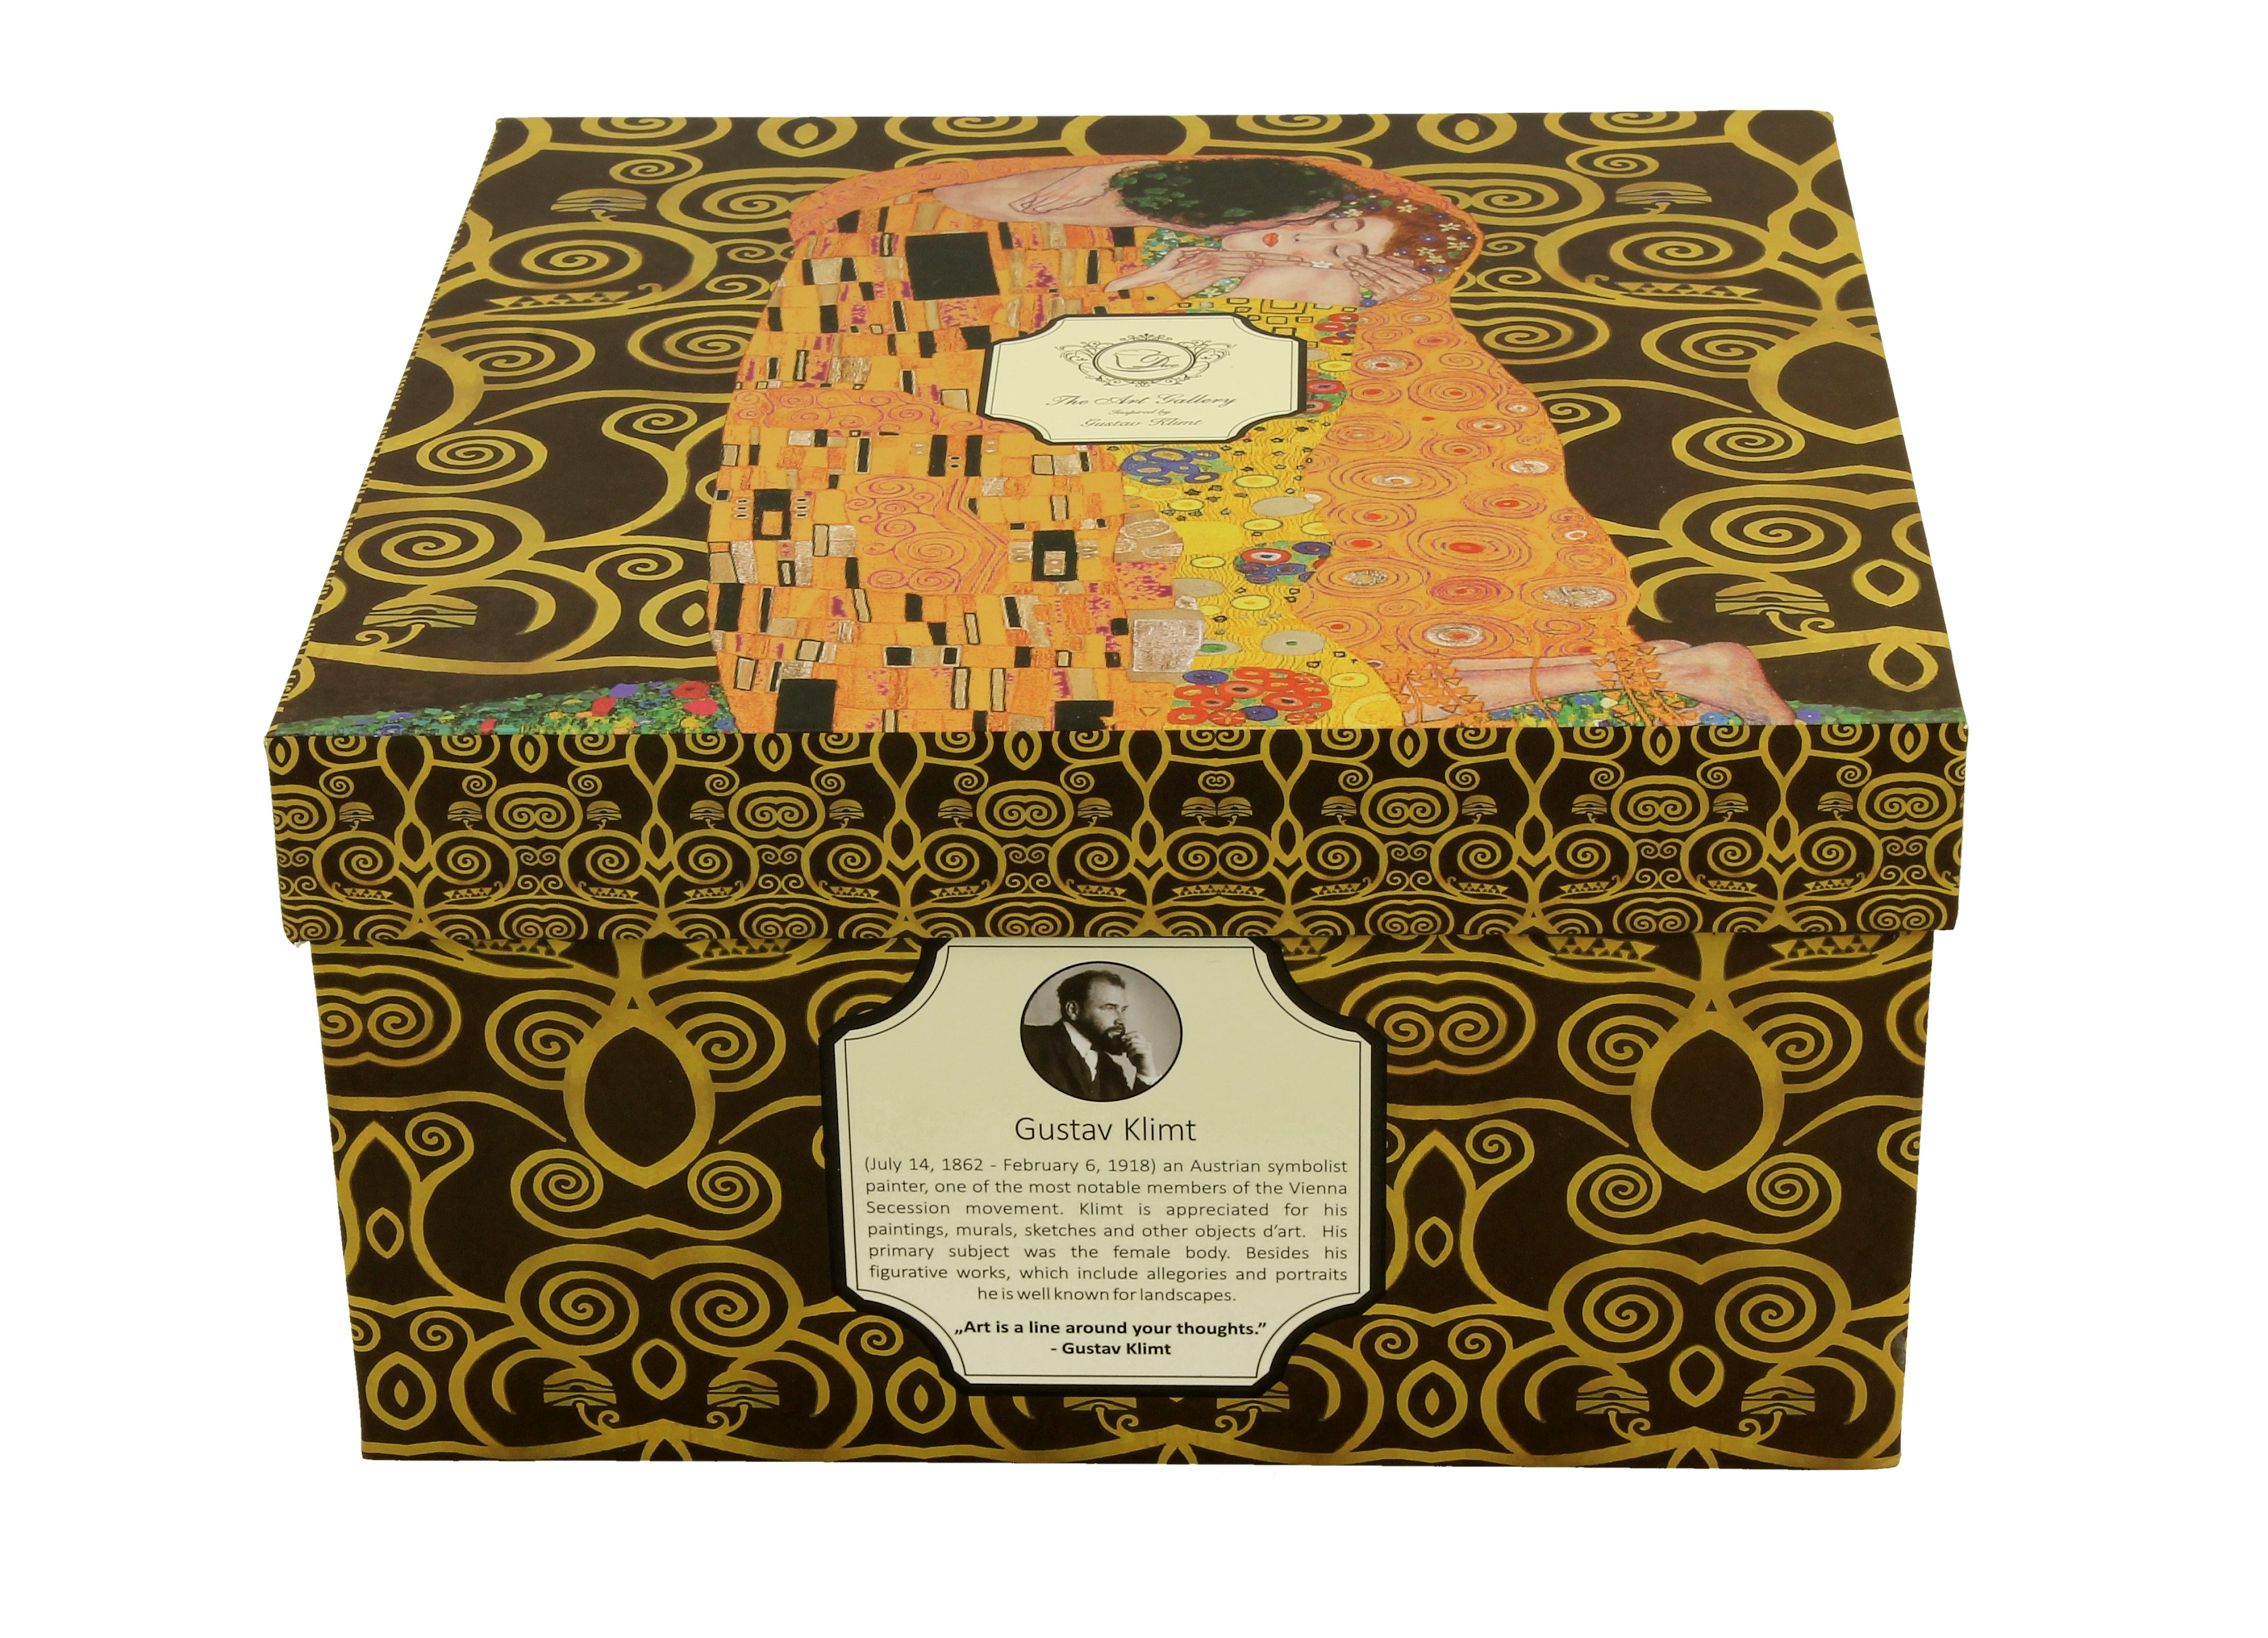 Jumbo porcelánová šálka s podšálkou Gustav Klimt - The Kiss Brown 470 ml